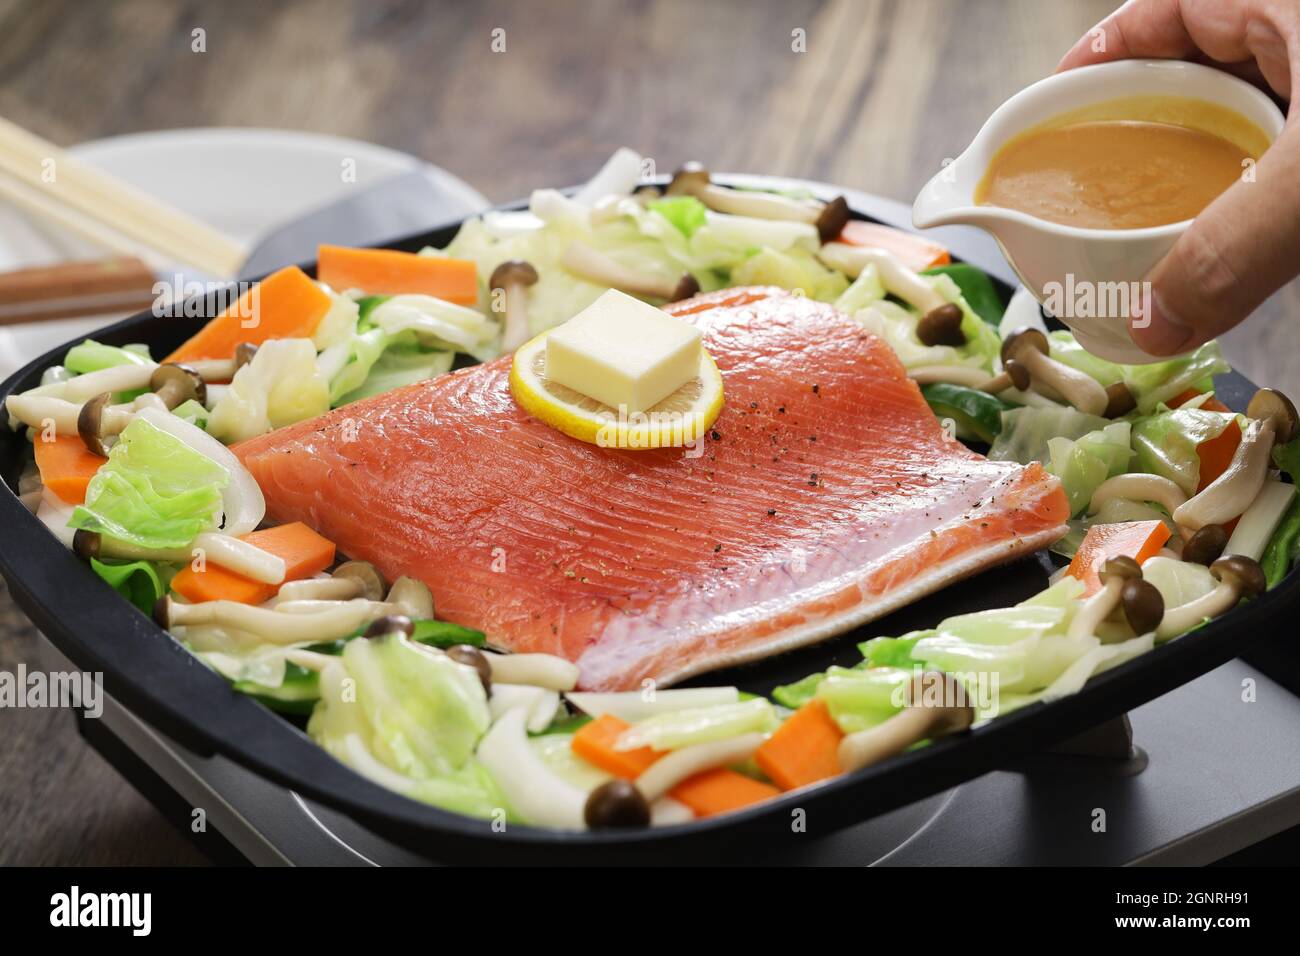 Cucina giapponese; salmone in stile Hokkaido chanchan yaki, salmoni fritti e verdure, conditi con salsa di miso. Foto Stock